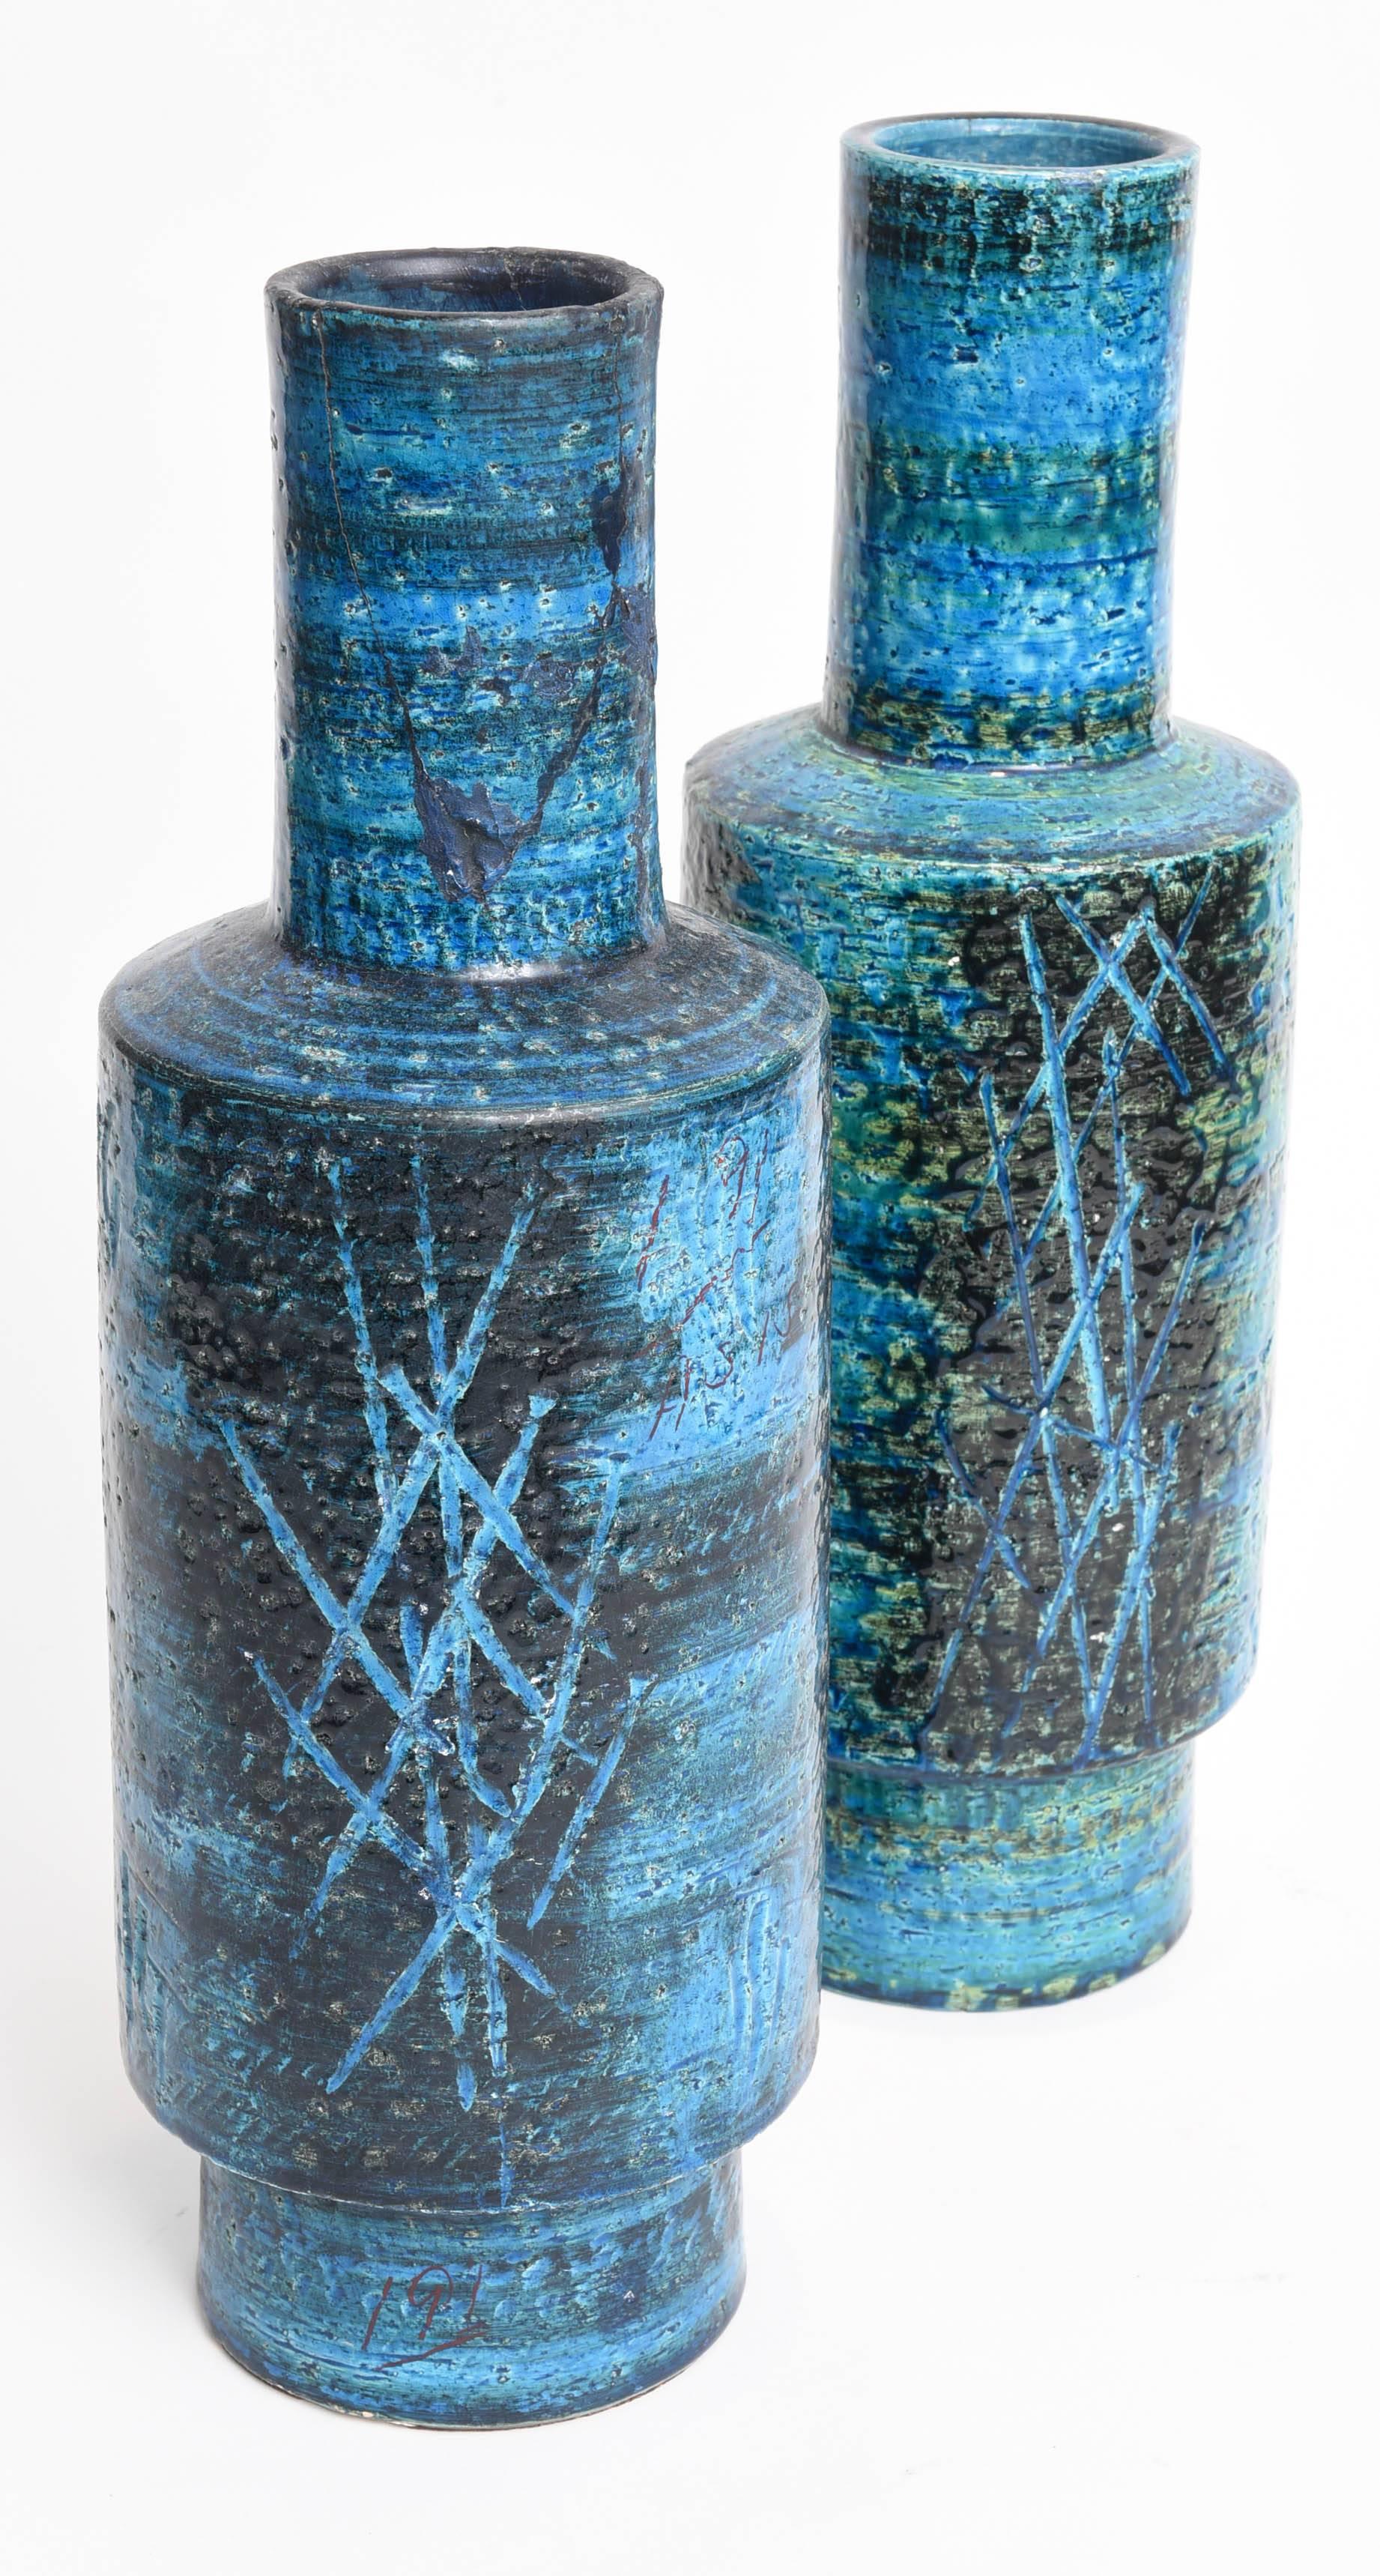 Seltenes Paar blauer Vasen im brutalistischen Stil von Bitossi:: entworfen von Aldo Londi für Raymor in seinem charakteristischen Sgraffito-Stil:: mit Papieretikett am Boden.  Diese wurden in den 1960er Jahren von Raymor und Rosenthal für den